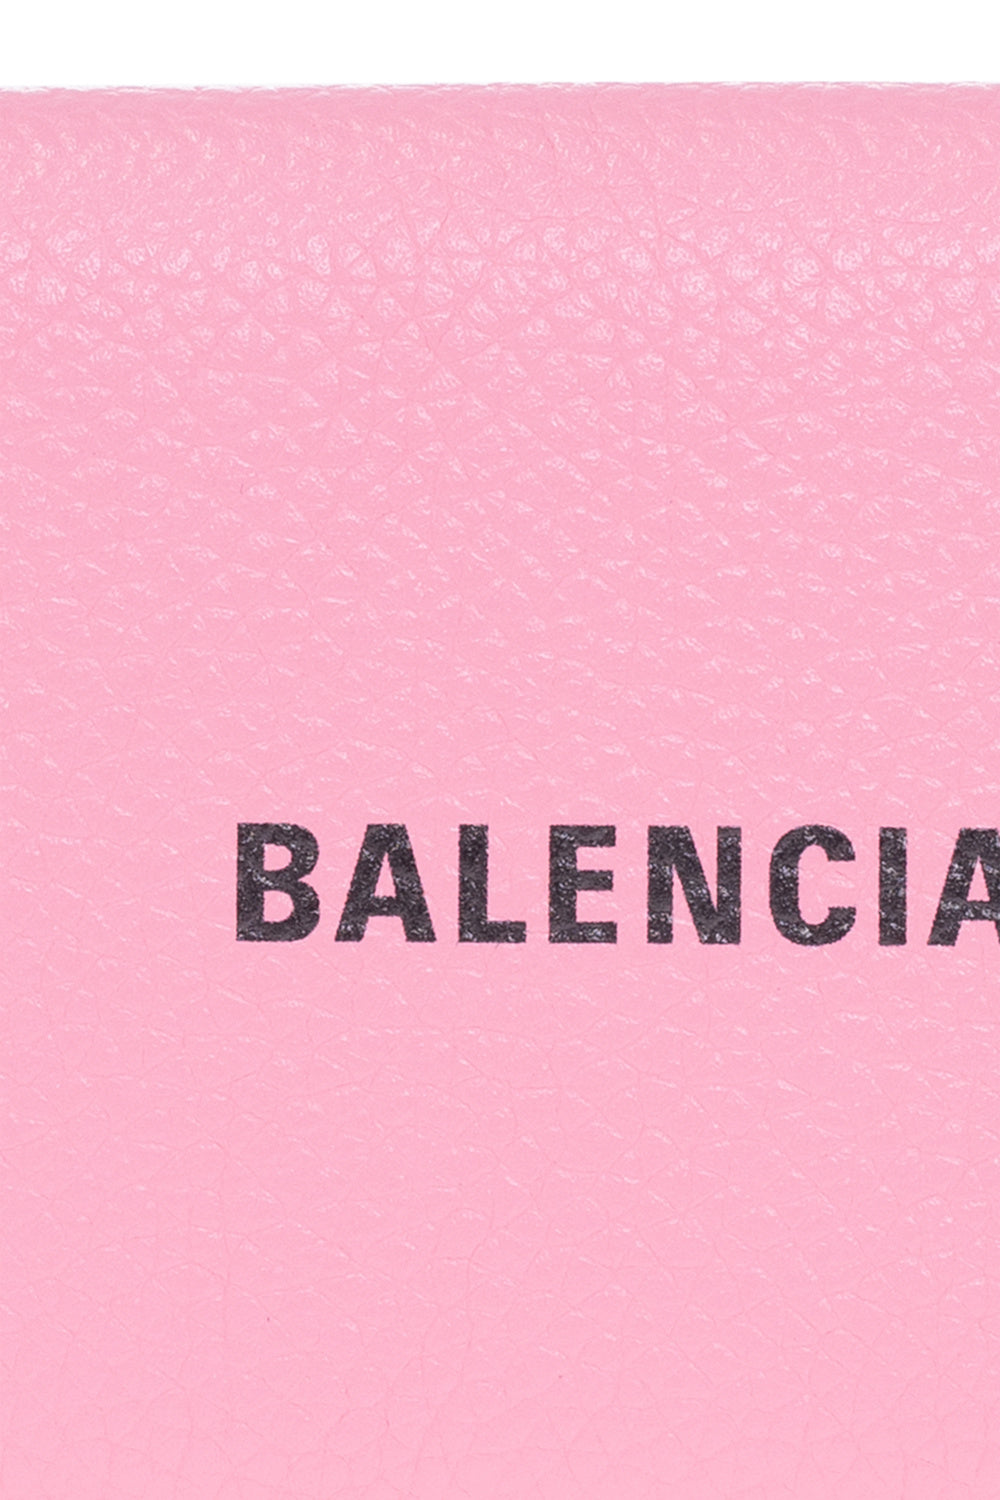 13 Balenciaga Wallpapers  Wallpaperboat